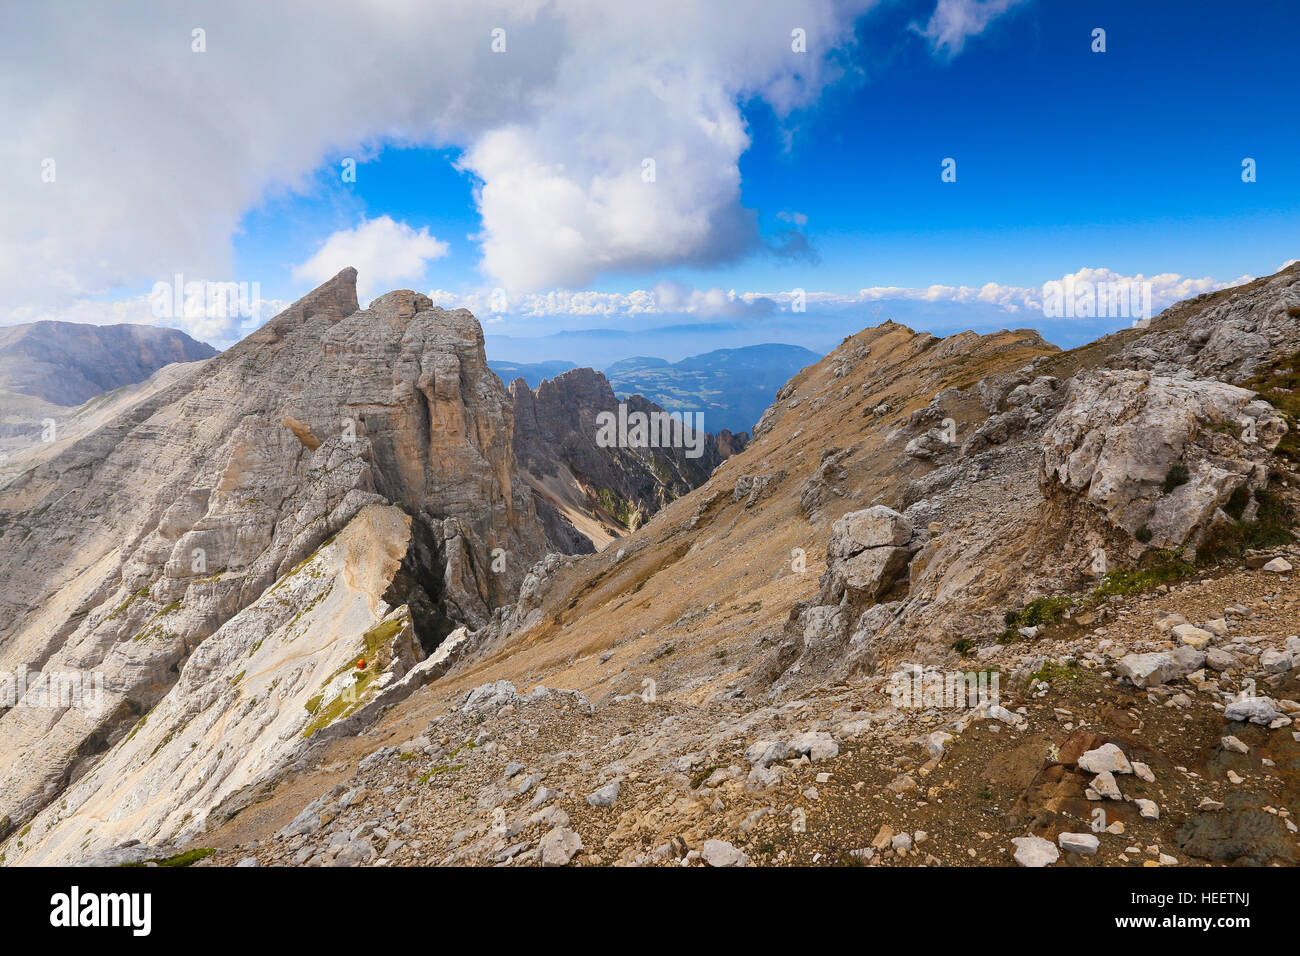 The Latemar mountain massif.  The peaks of Schenon and Cimon del Latemar mountains. M.Rigatti red bivouac. The Dolomites. Trentino. Italian Alps. Stock Photo